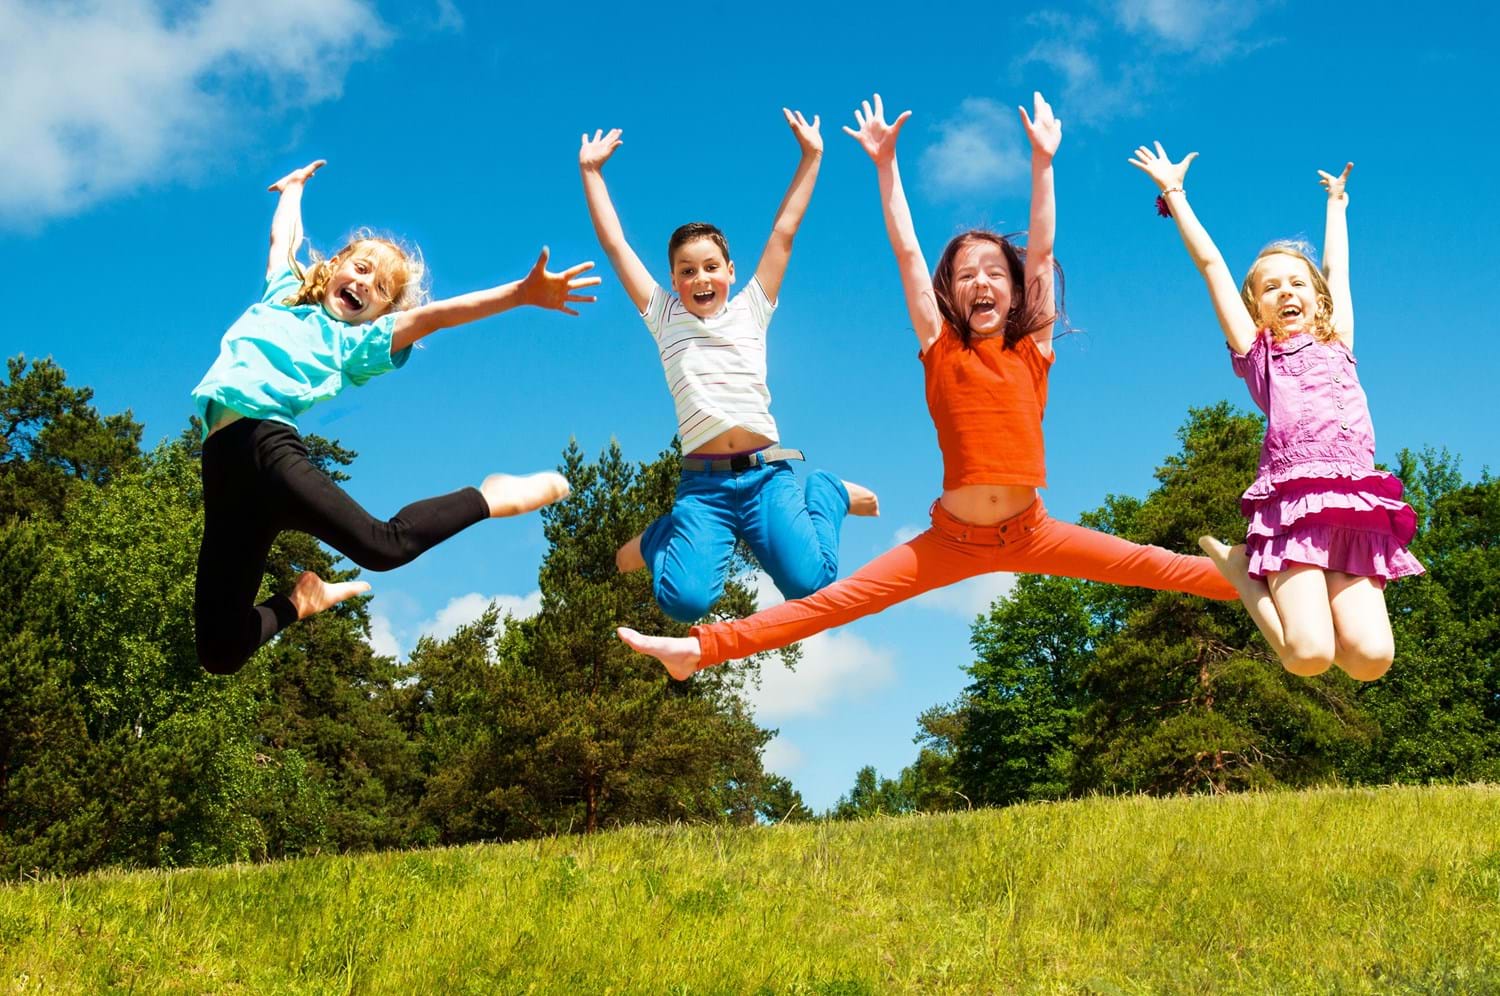 Kinder auf einer Wiese springen gemeinsam in die Luft und halten dabei die Hände in die Höhe.